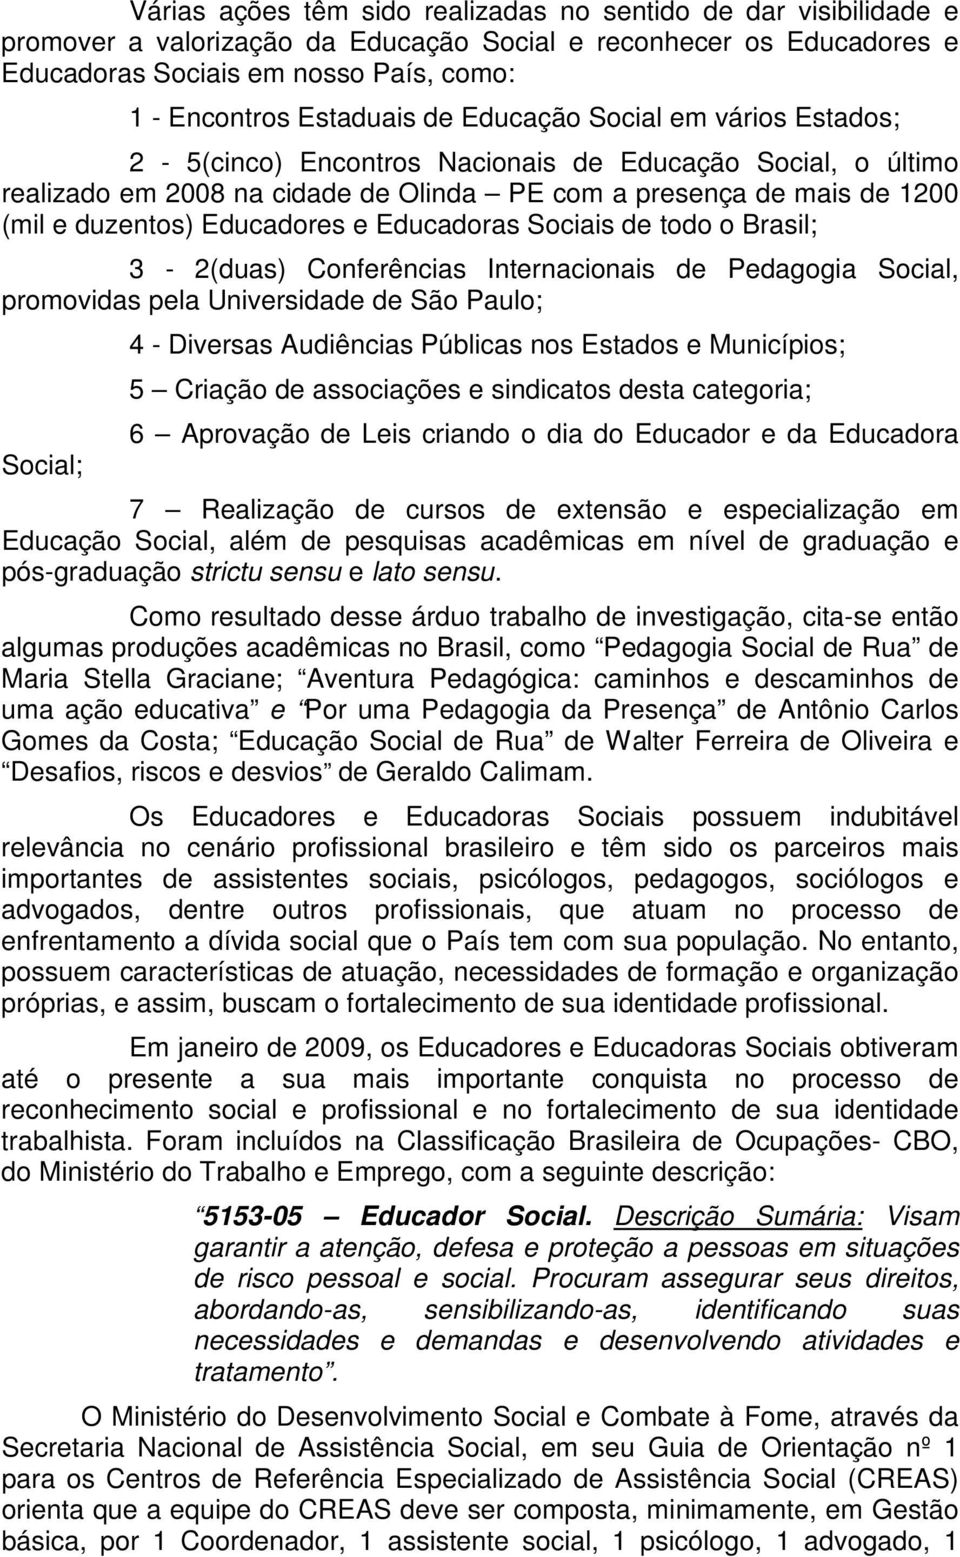 Educadores e Educadoras Sociais de todo o Brasil; 3-2(duas) Conferências Internacionais de Pedagogia Social, promovidas pela Universidade de São Paulo; Social; 4 - Diversas Audiências Públicas nos